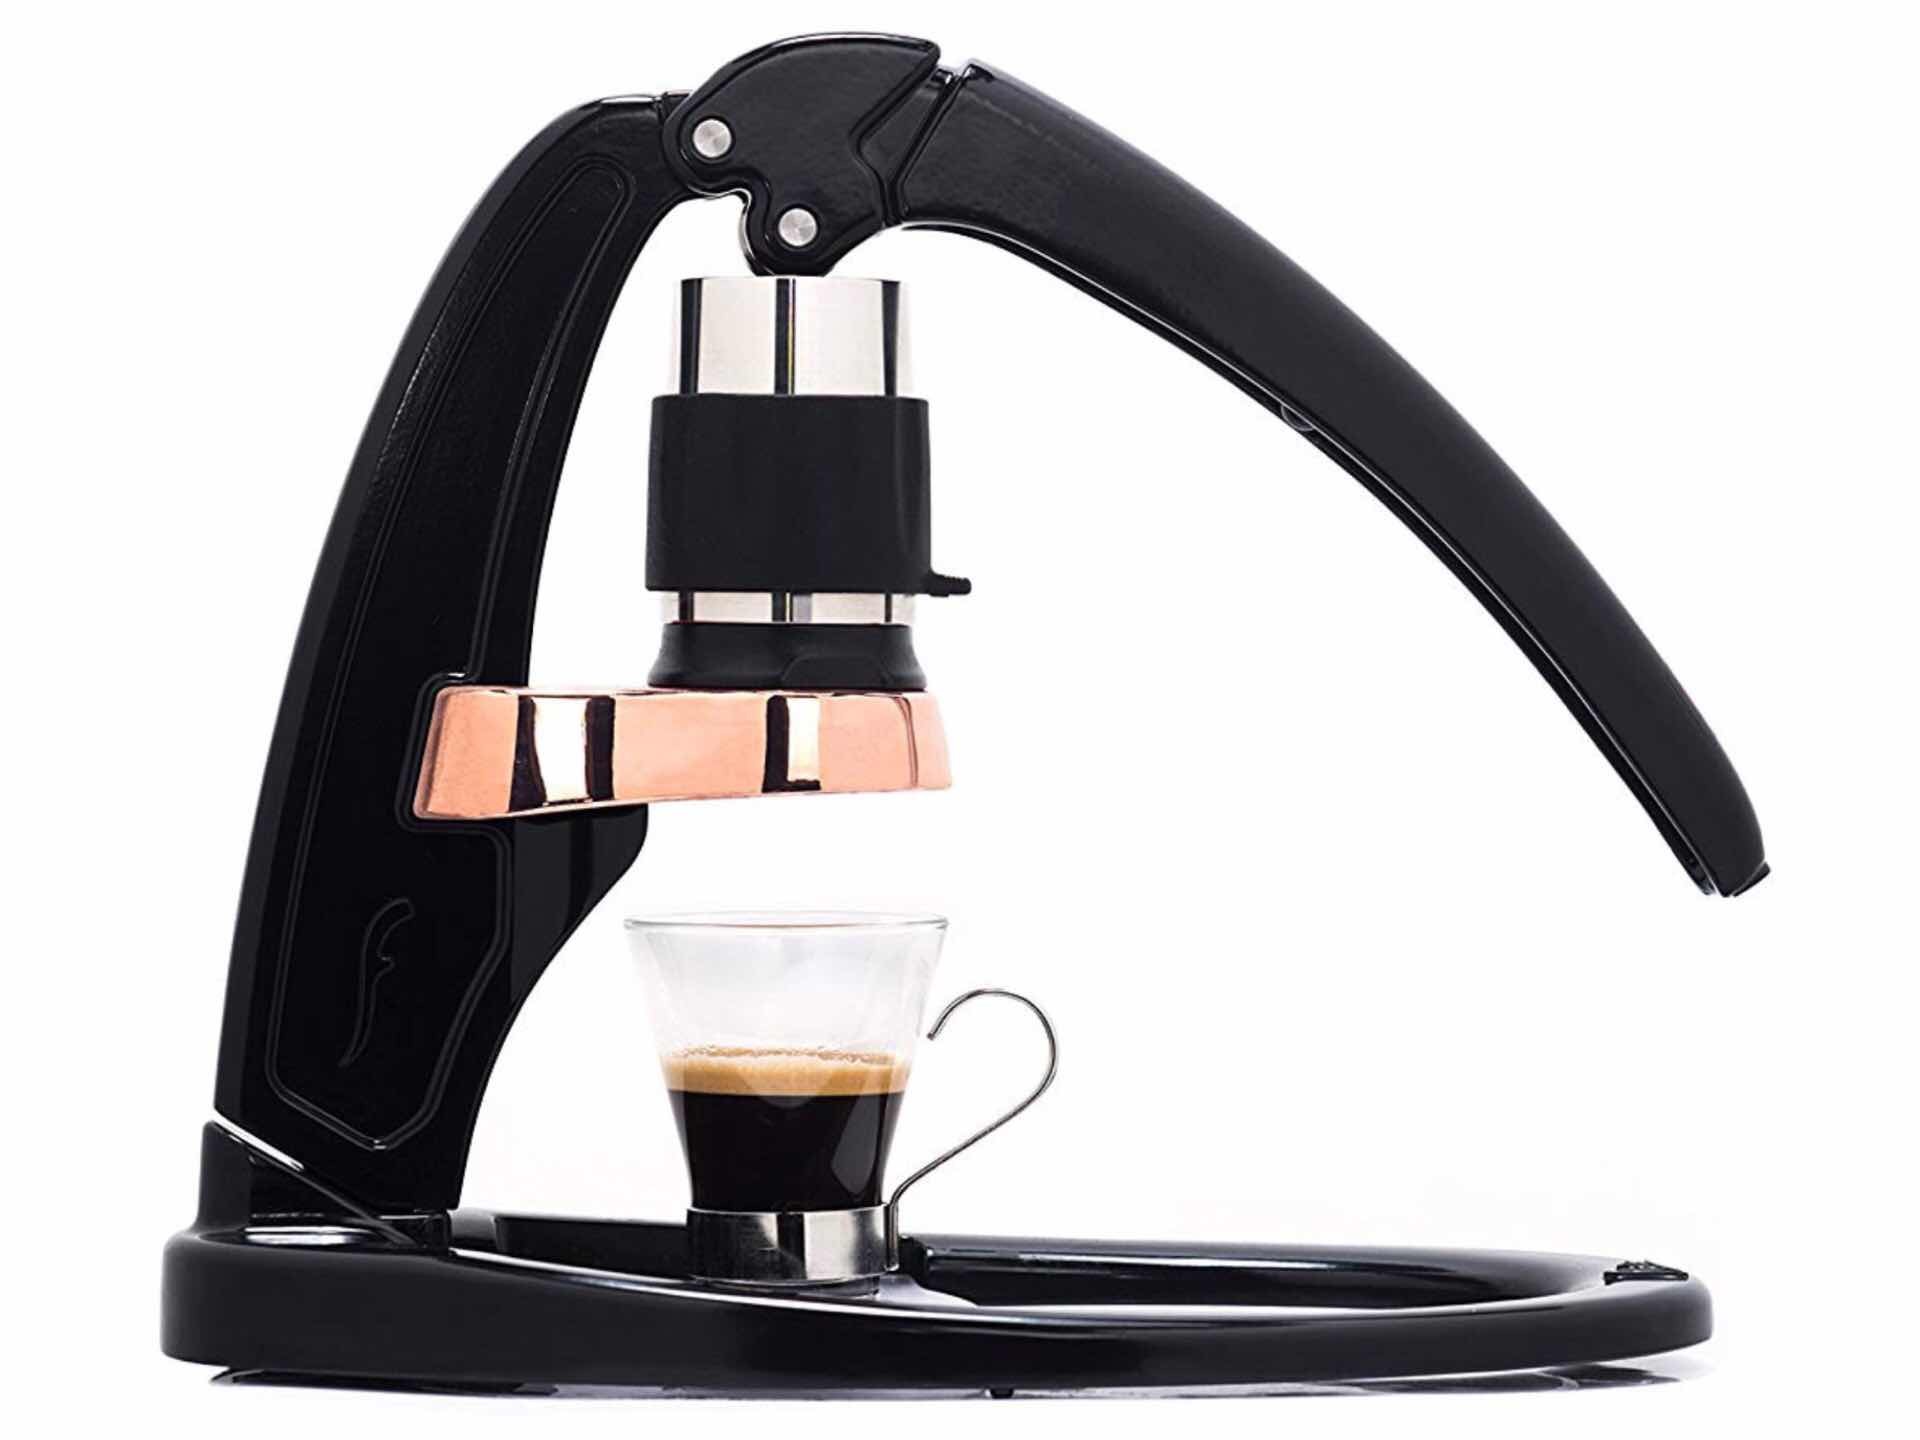 The Flair Signature manual espresso maker. ($199)